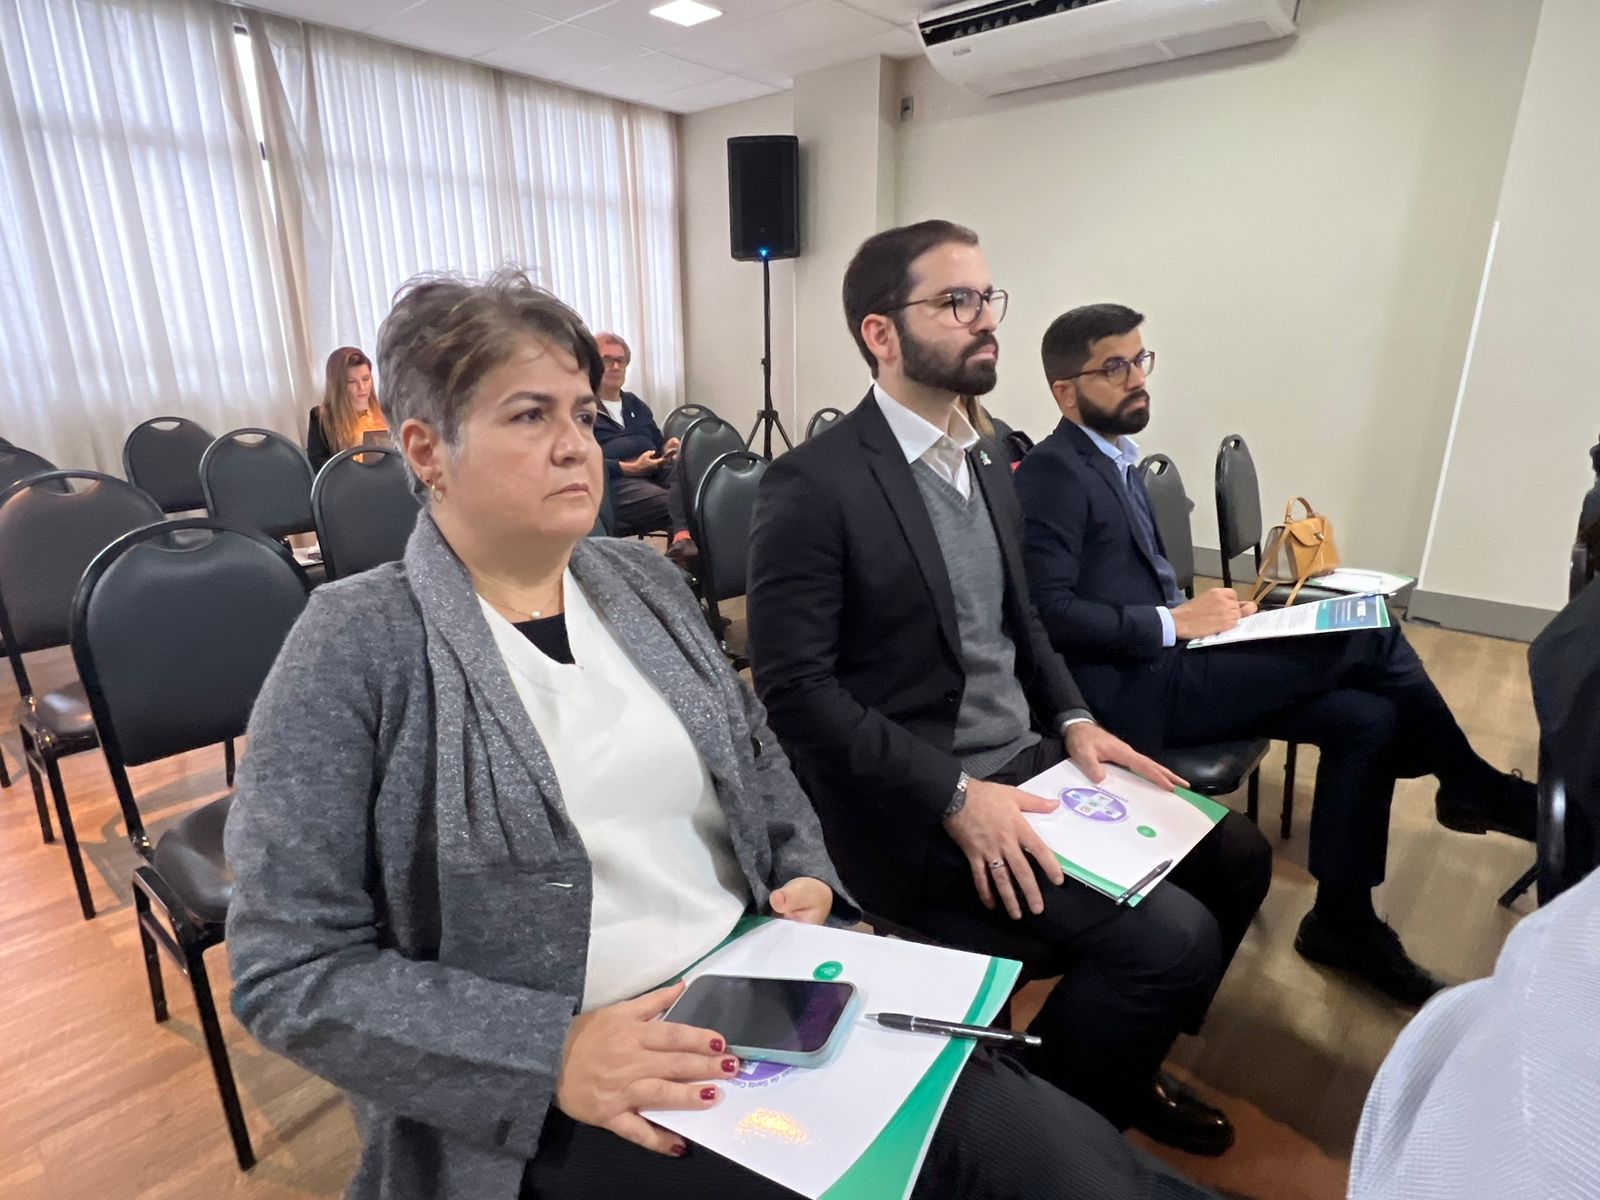 Diretores da FENAM e do SIMEPI participando do Fórum das Entidades Médicas de Santa Catarina que acontece em Criciúma (SC).